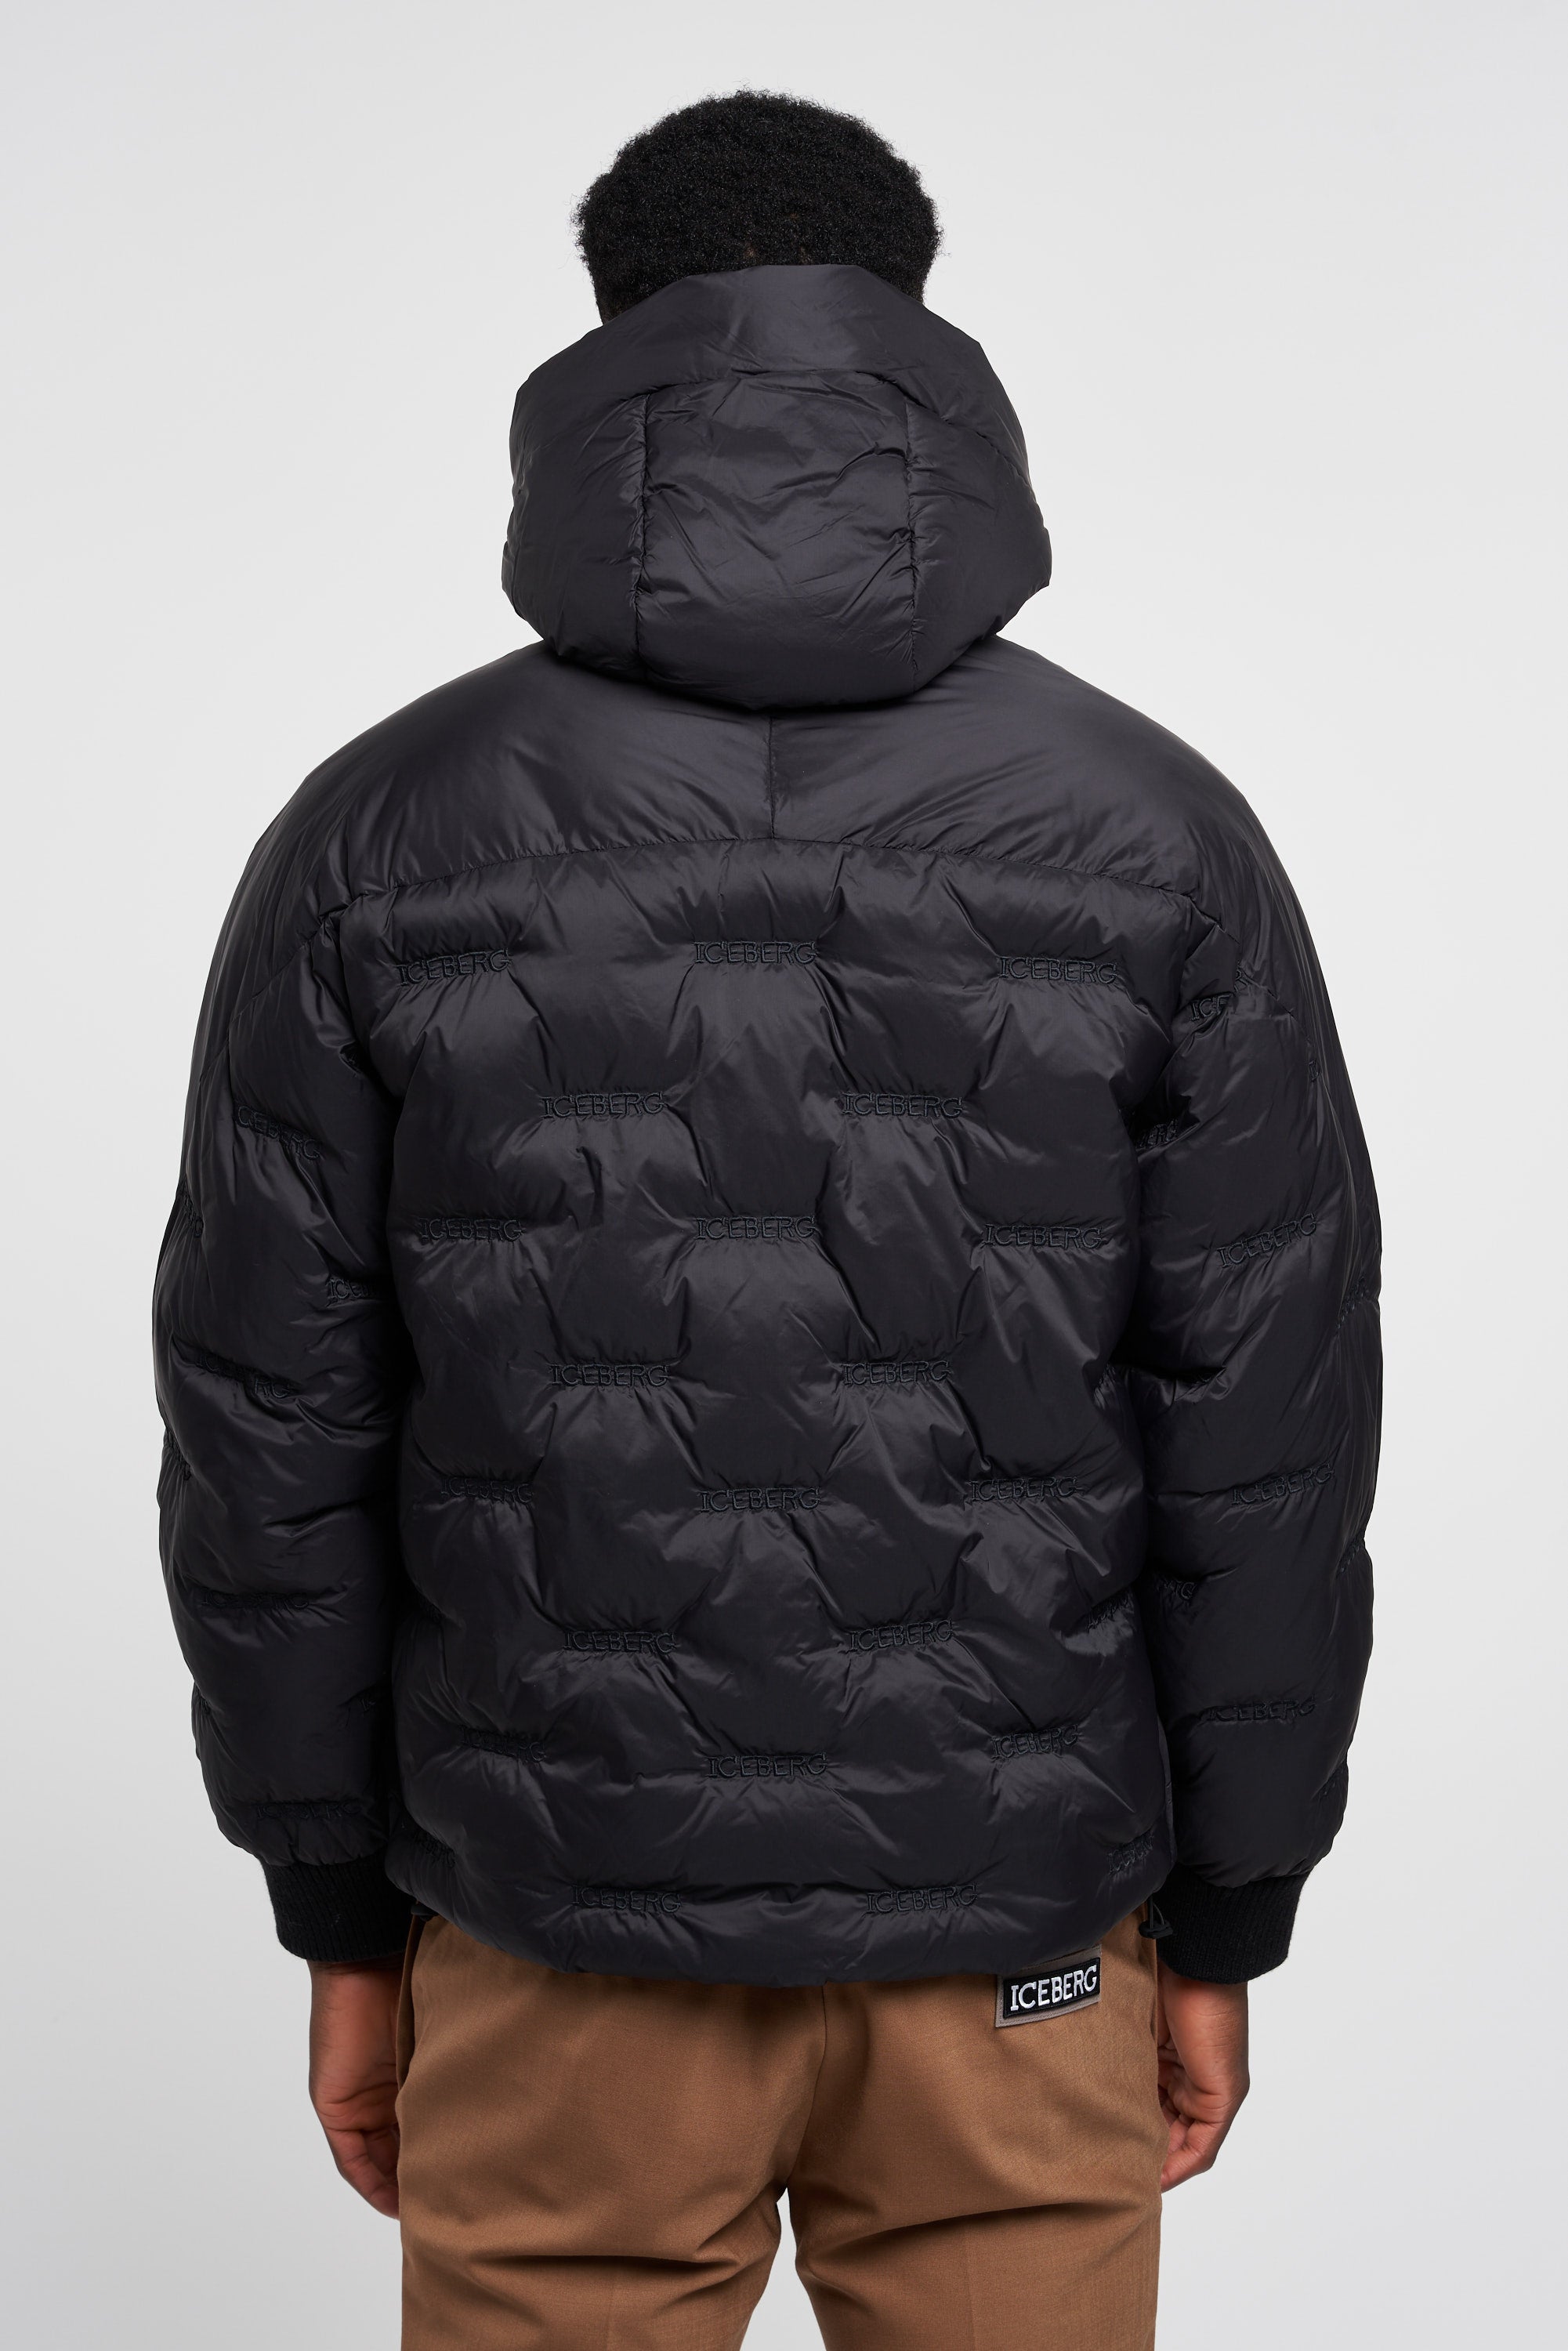 Iceberg Padded Jacket with Hood Nylon Black-4